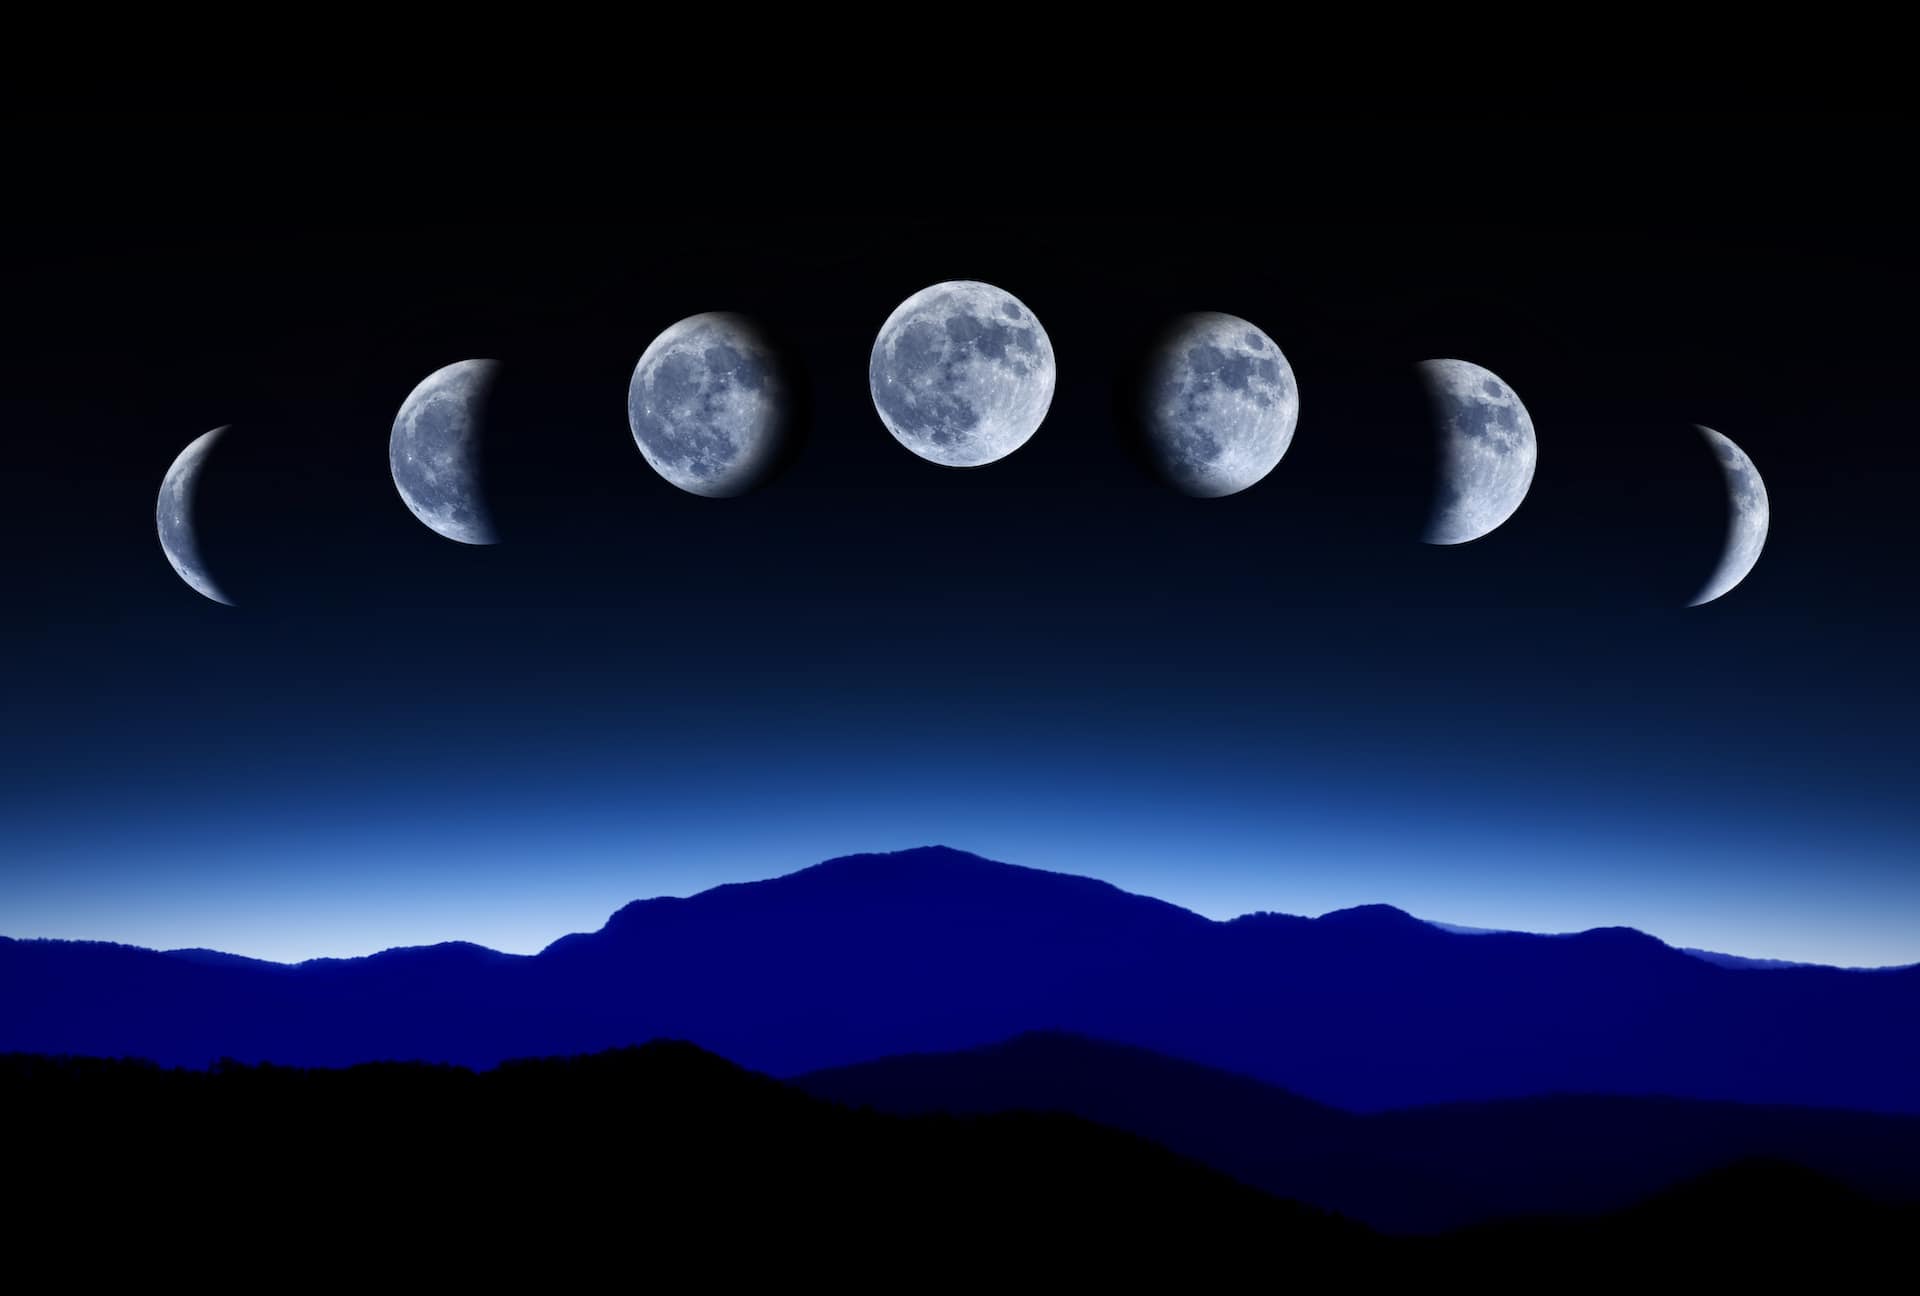 Les séries de la Nouvelle Lune: transits lunaires sur fond céleste.